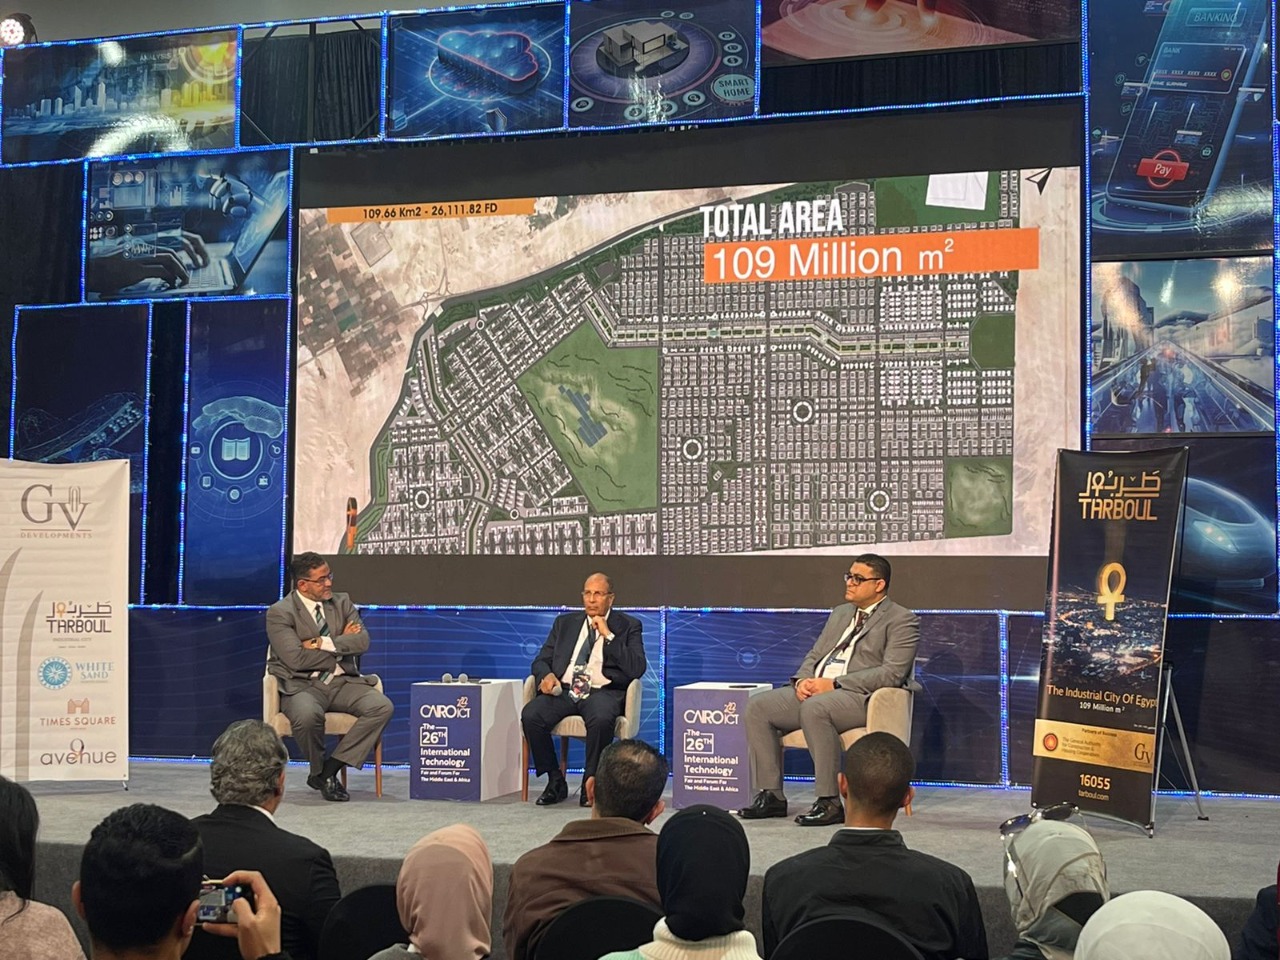 مجموعة GV للتنمية العمرانية تستعرض «مدينة طربول الصناعية» في معرض CairoICT